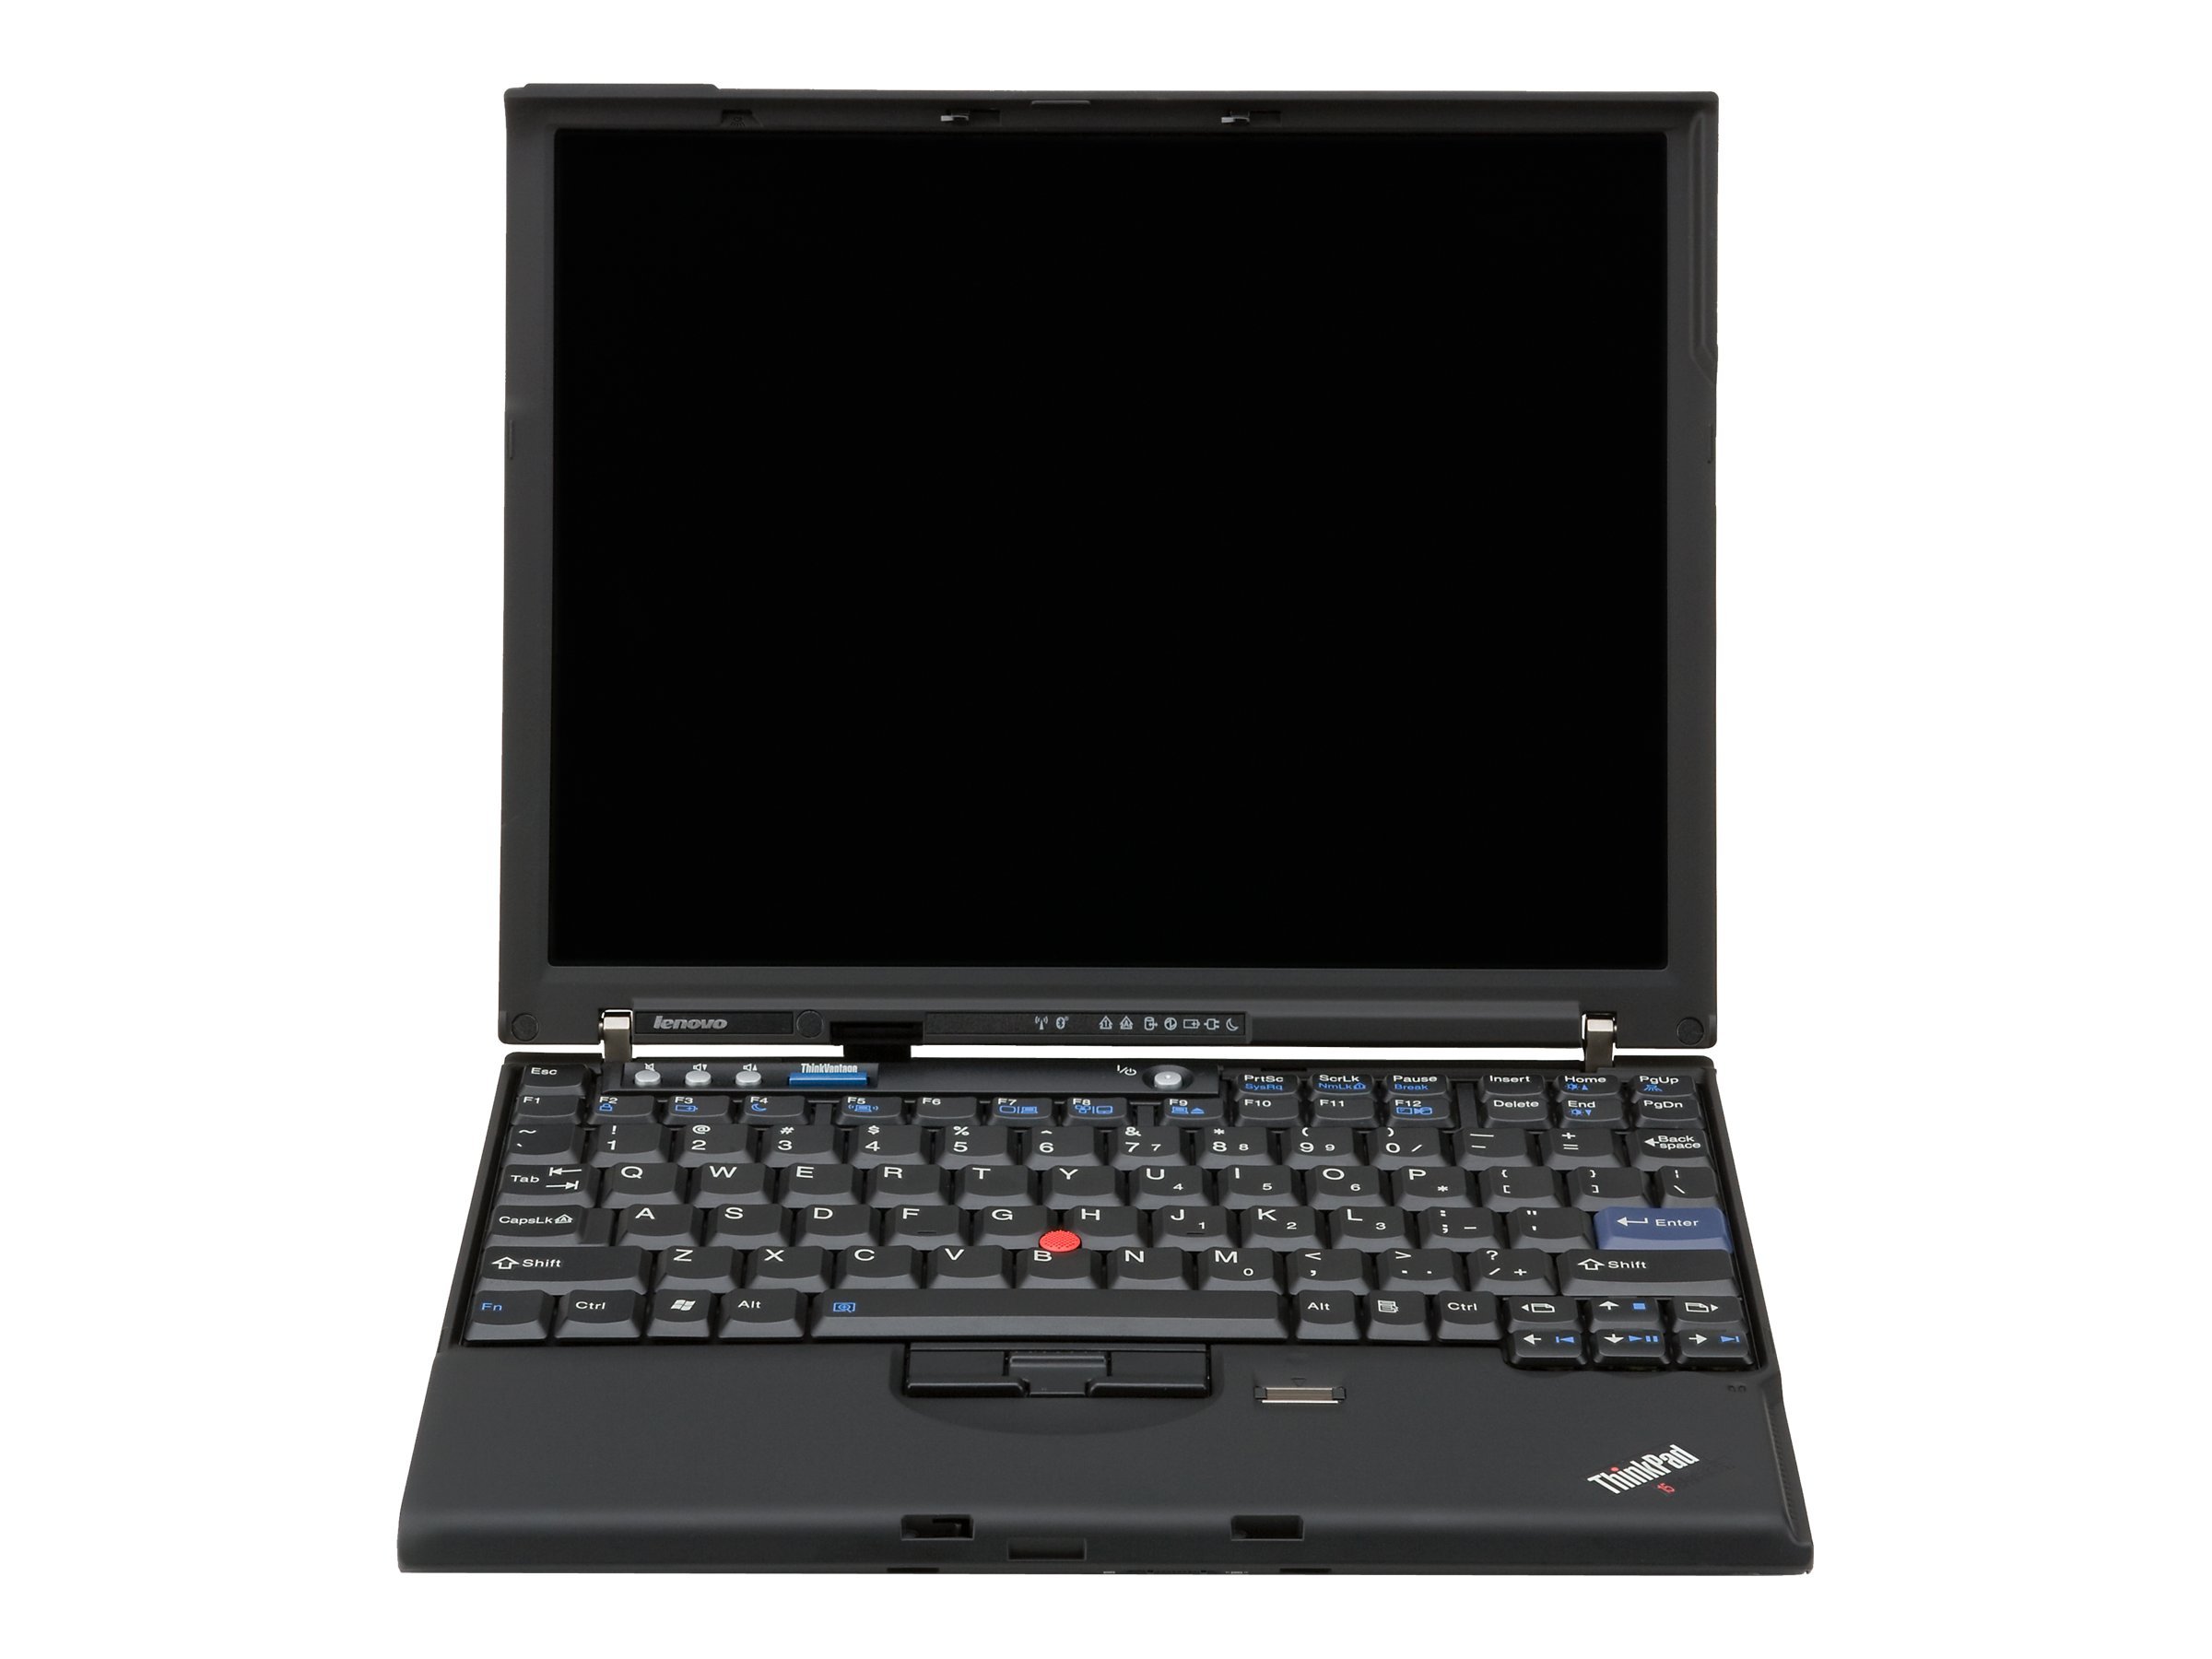 Lenovo ThinkPad X61s (7667)